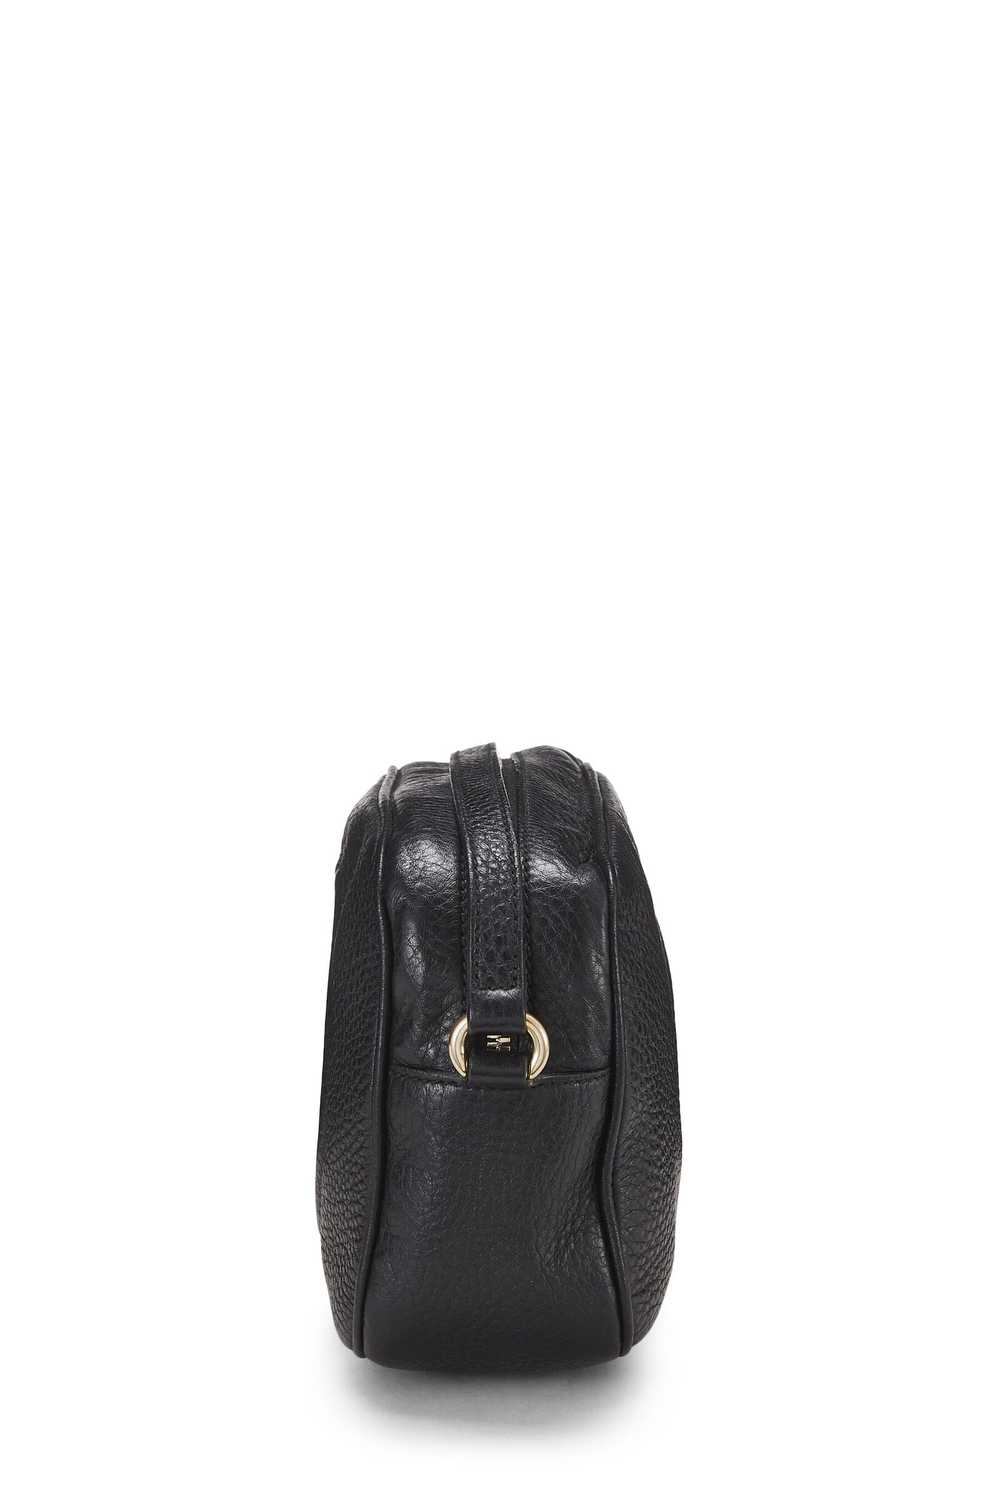 Black Leather Soho Disco Bag - image 3